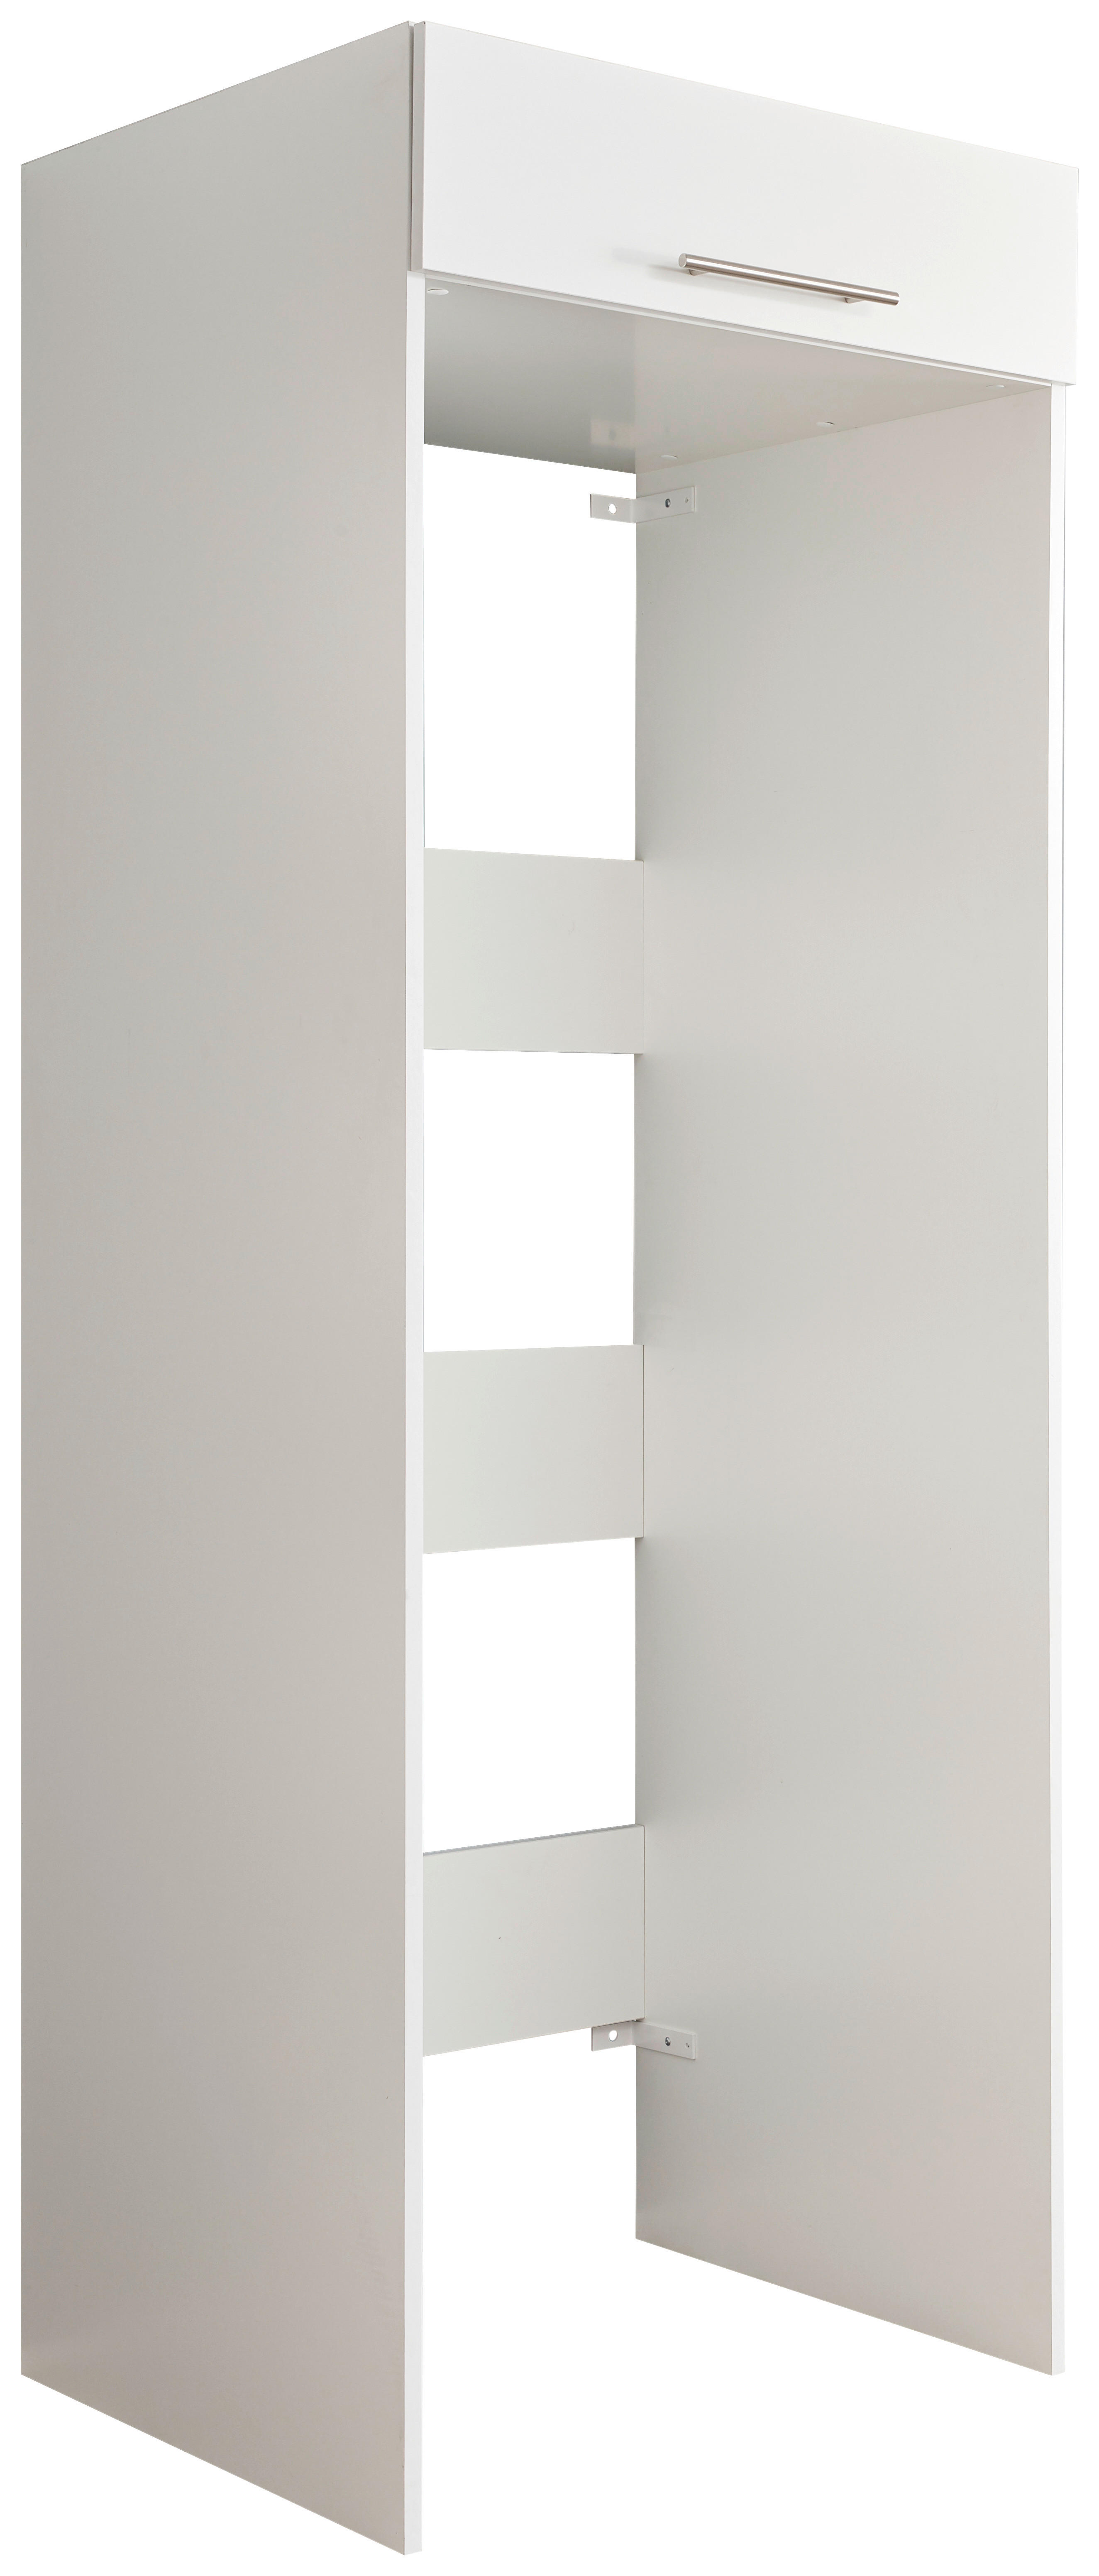 WASCHMASCHINENSCHRANK  - Silberfarben/Weiß, Design, Metall (67,5/200/67,5cm)